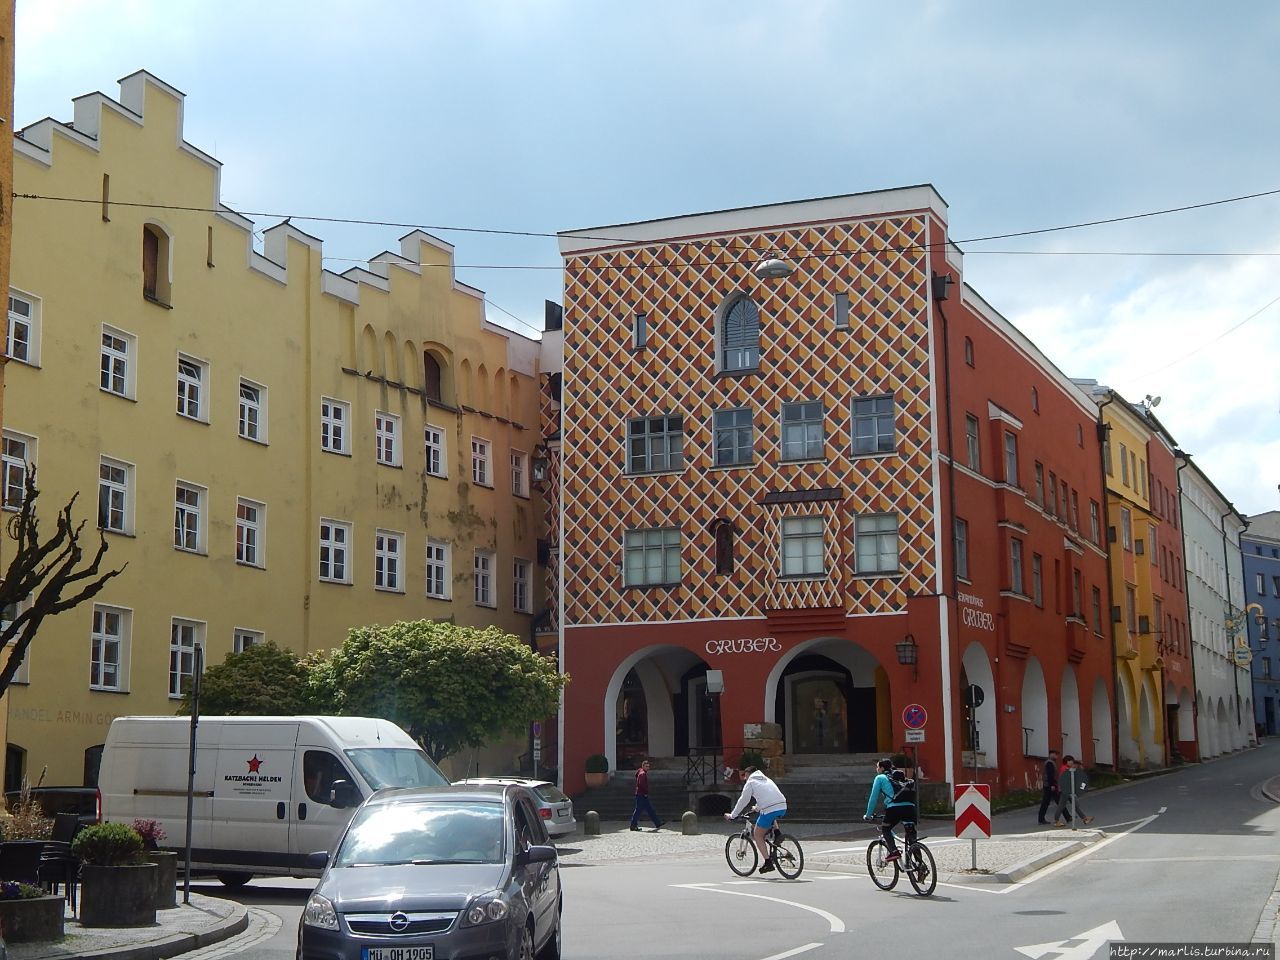 Желтые здания таможни, здание в ромбик — Сурауерхауз — пекарня 16 века, специализировавшаяся на Рождественских пряниках. Вид со стороны рыночной площади Марктплатц Вассербург-на-Инне, Германия